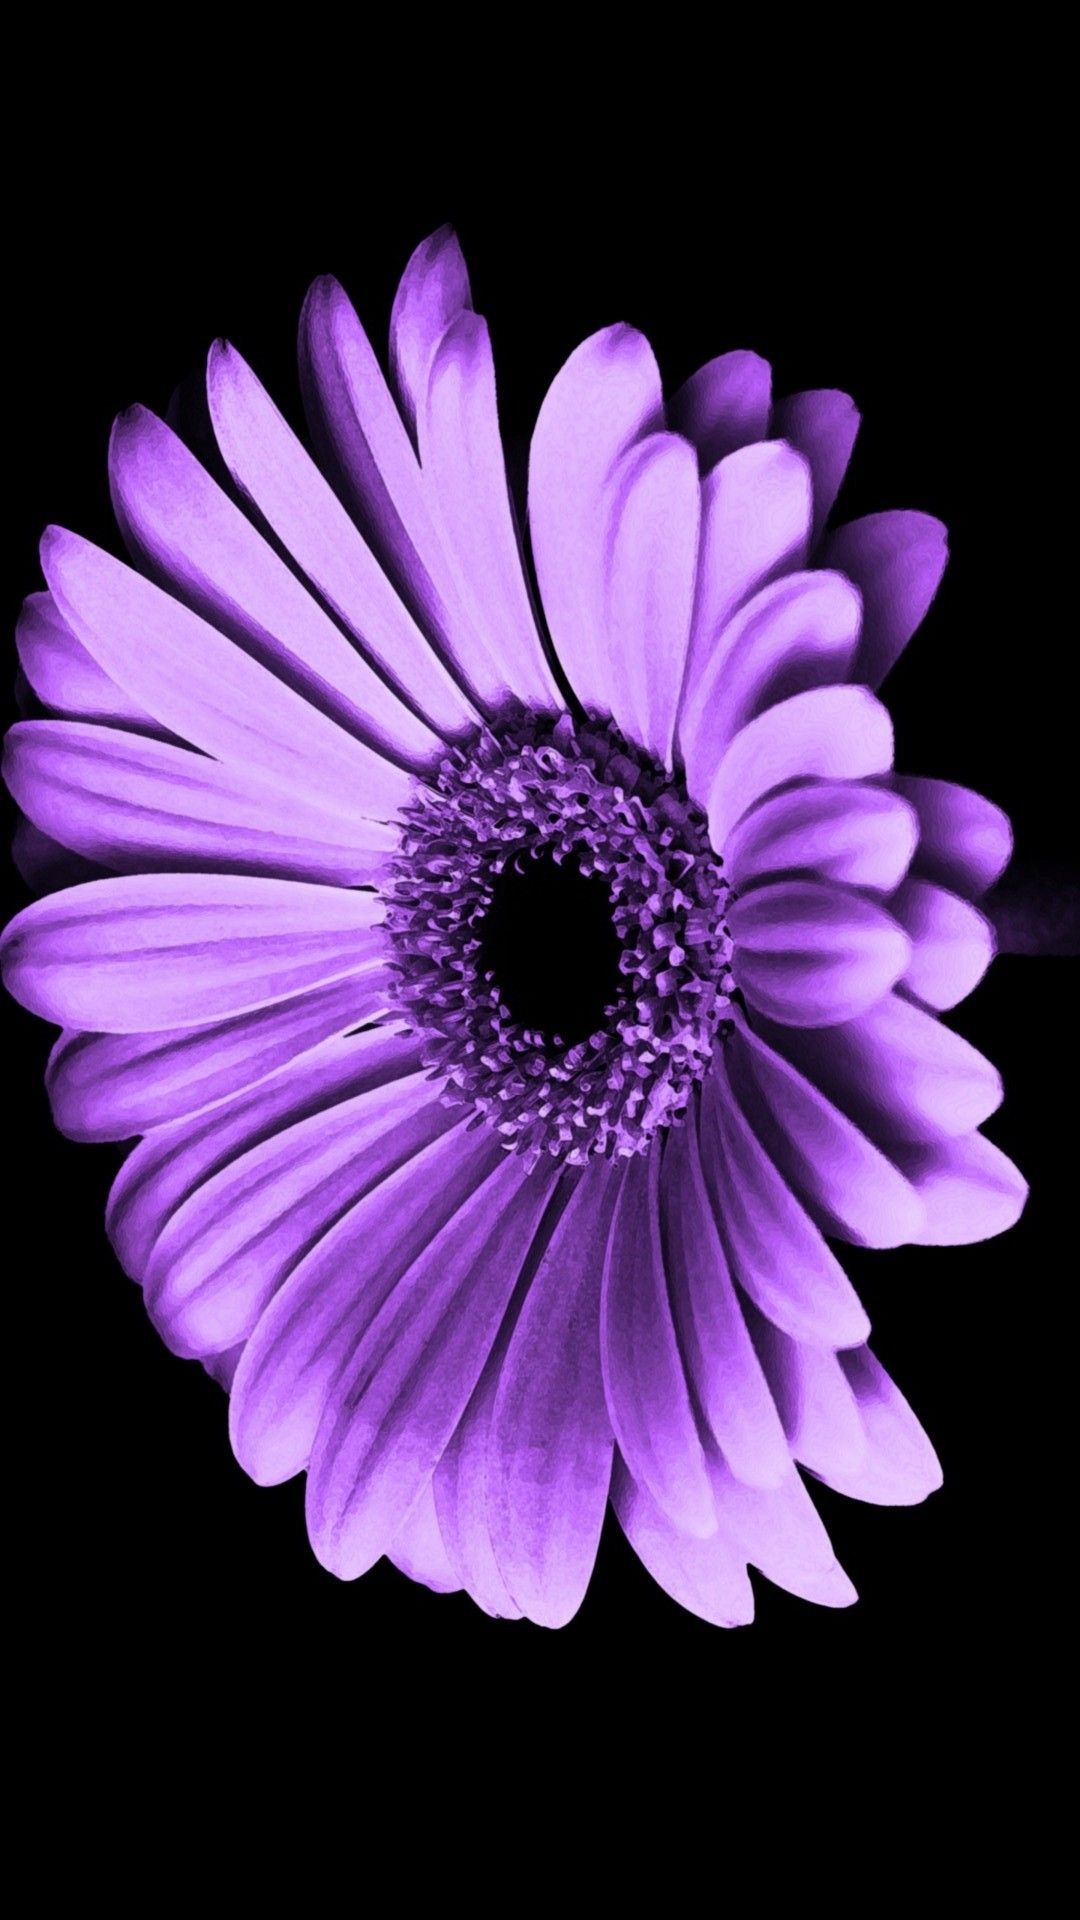 1080x1920 Purple Flowers Iphone Wallpaper Hd 2022 Cute Wallpaper